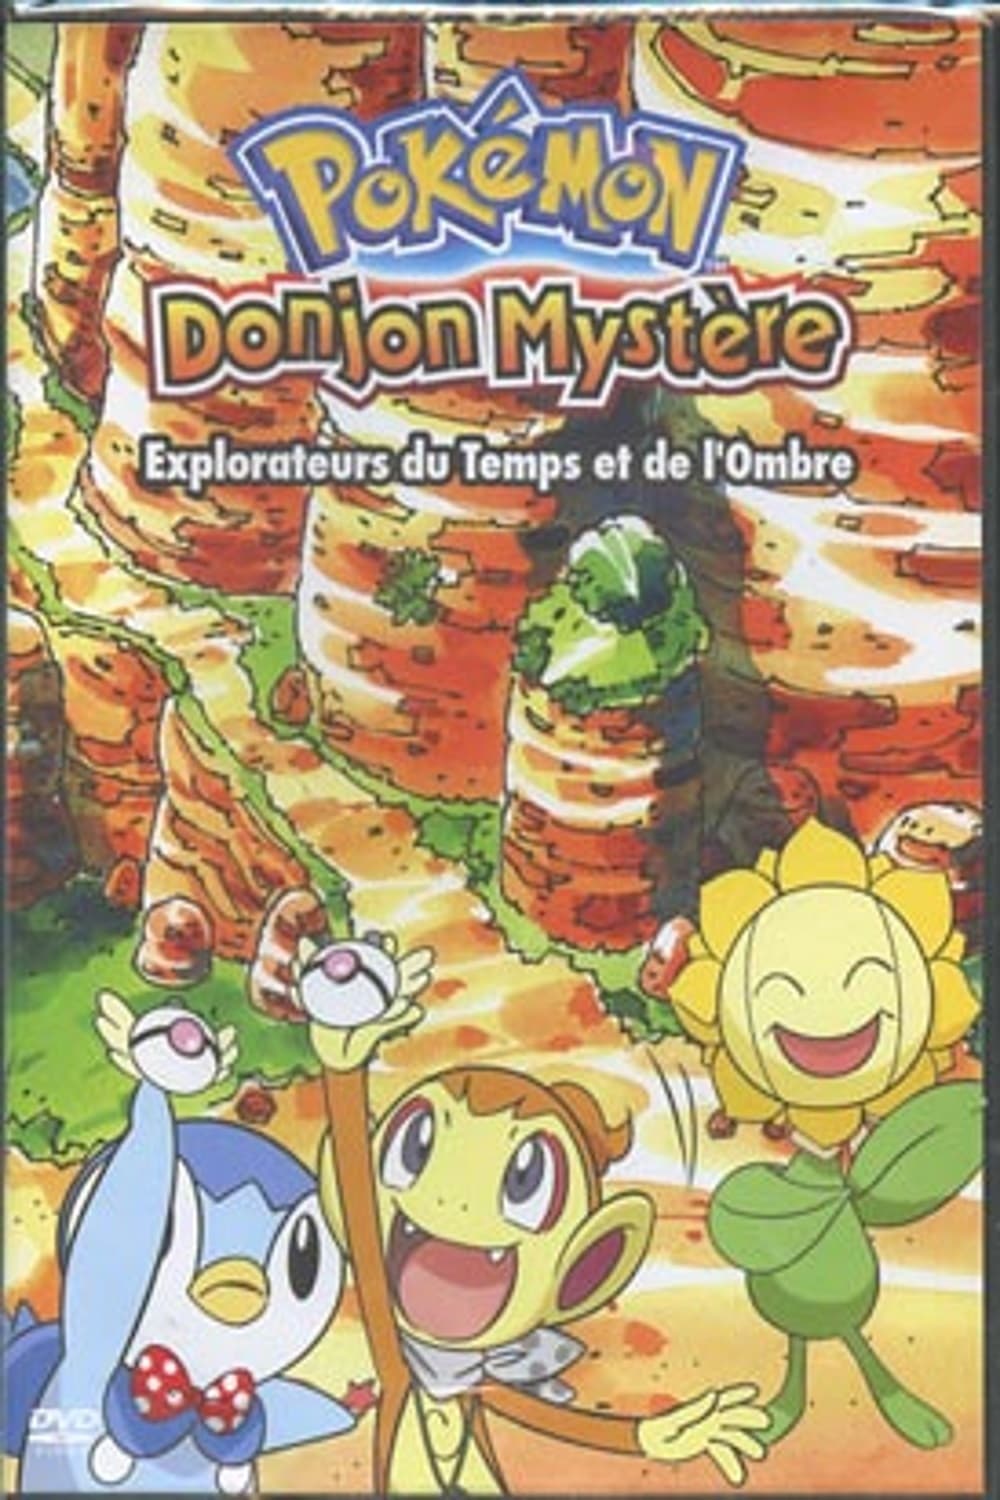 Pokémon Donjon Mystère 2 - Explorateurs du Temps et de l'Ombre (2007)